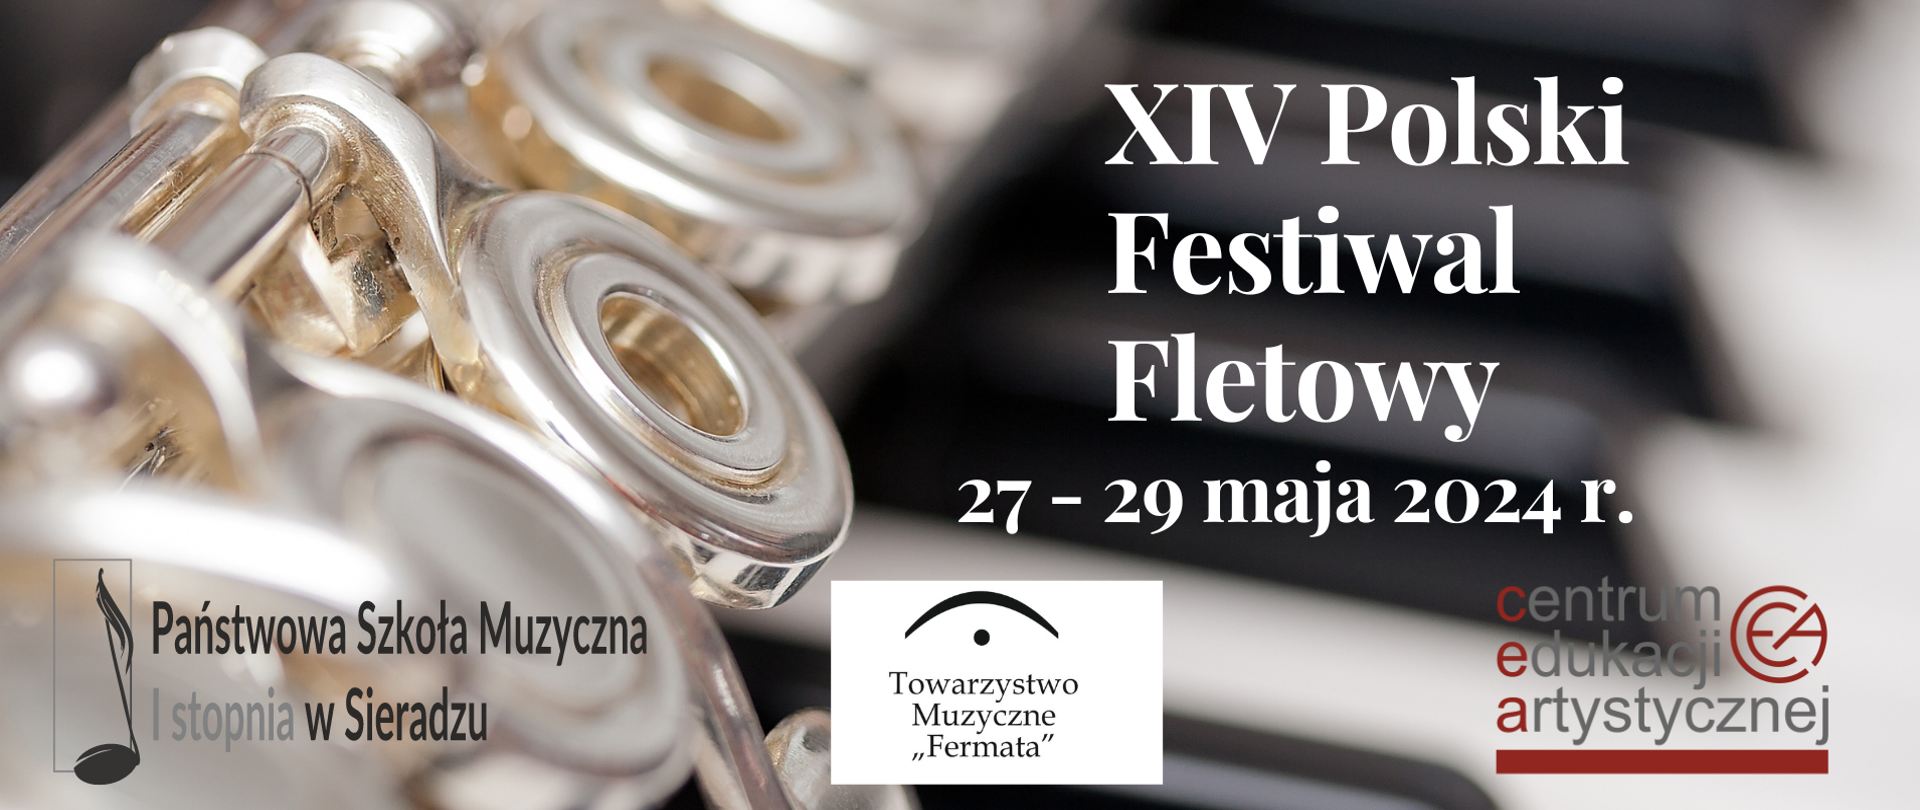 Po lewej stronie widać flet w zbliżeniu, obok widnieje napis XIV Polski Festiwal Fletowy 27-29 maja 2024 r.